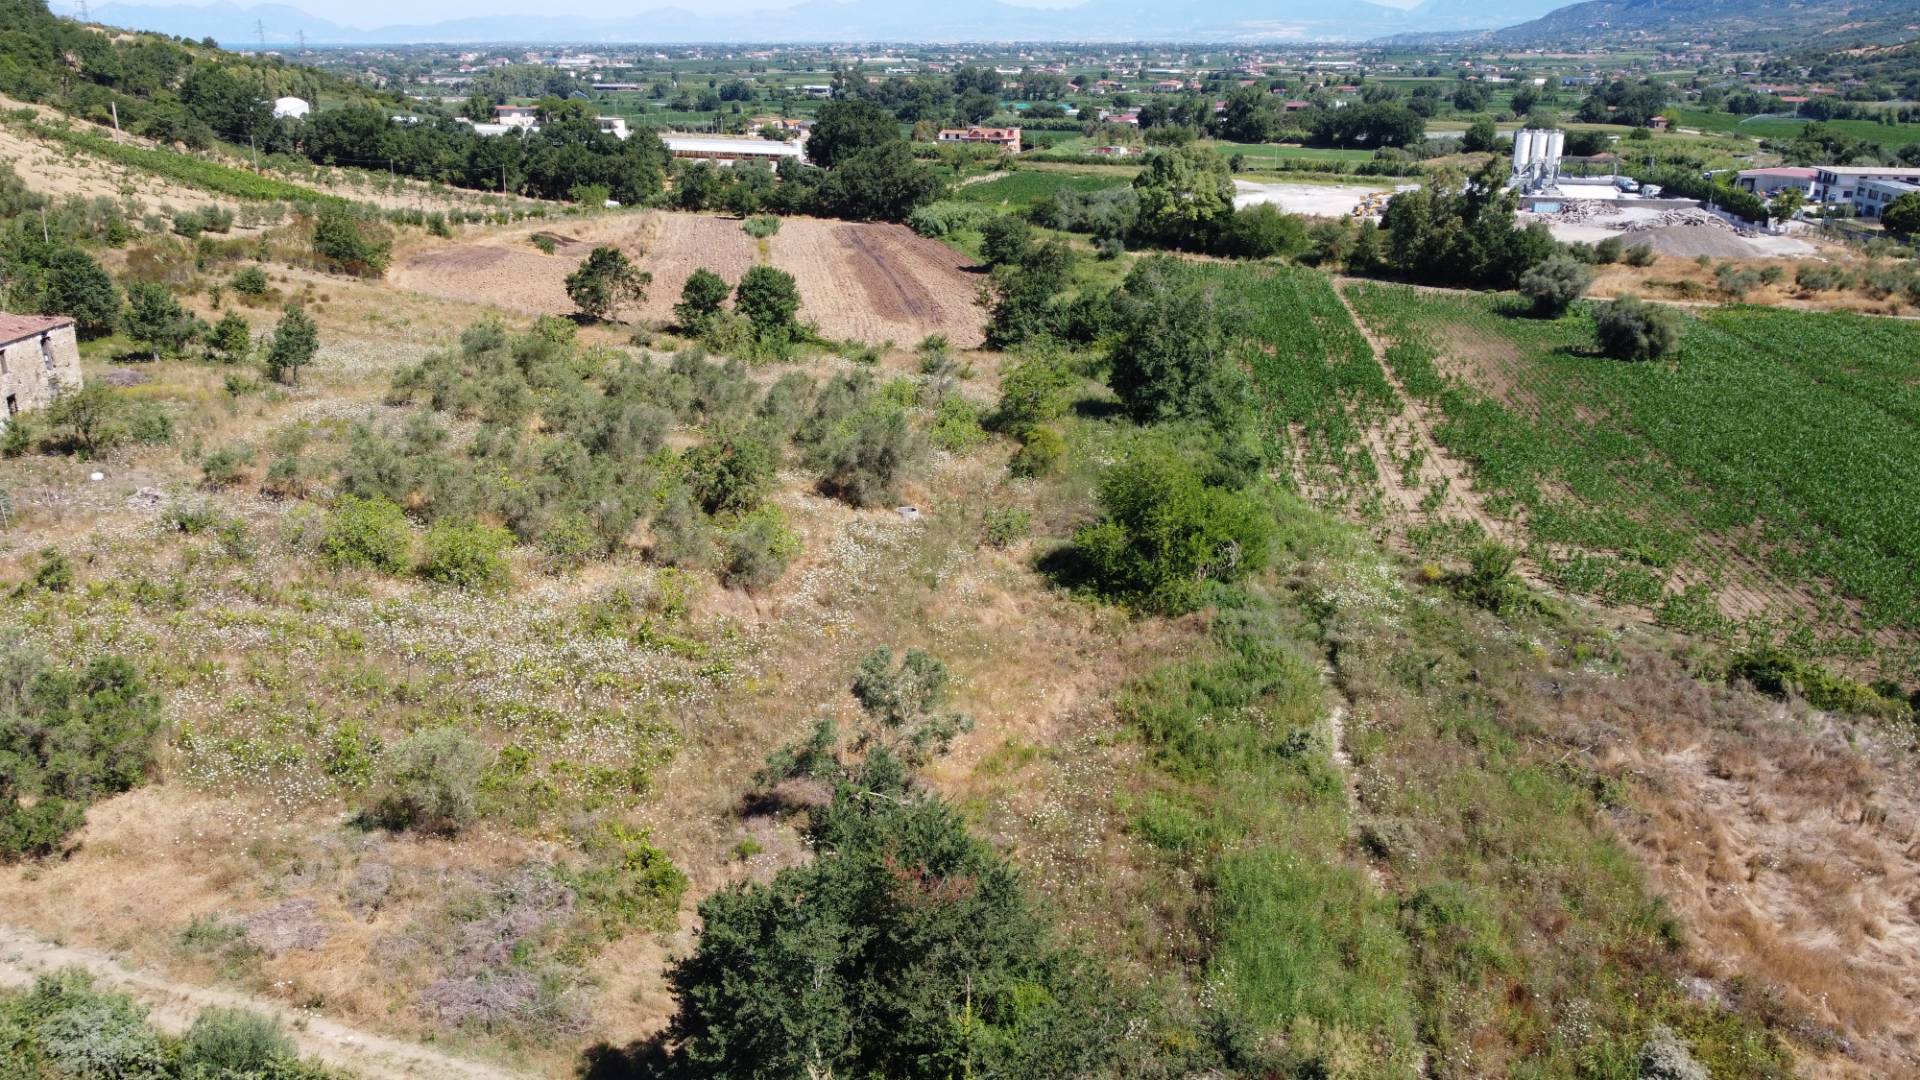 Terreno Edificabile Comm.le/Ind.le in vendita a Agropoli, 9999 locali, prezzo € 158.000 | CambioCasa.it